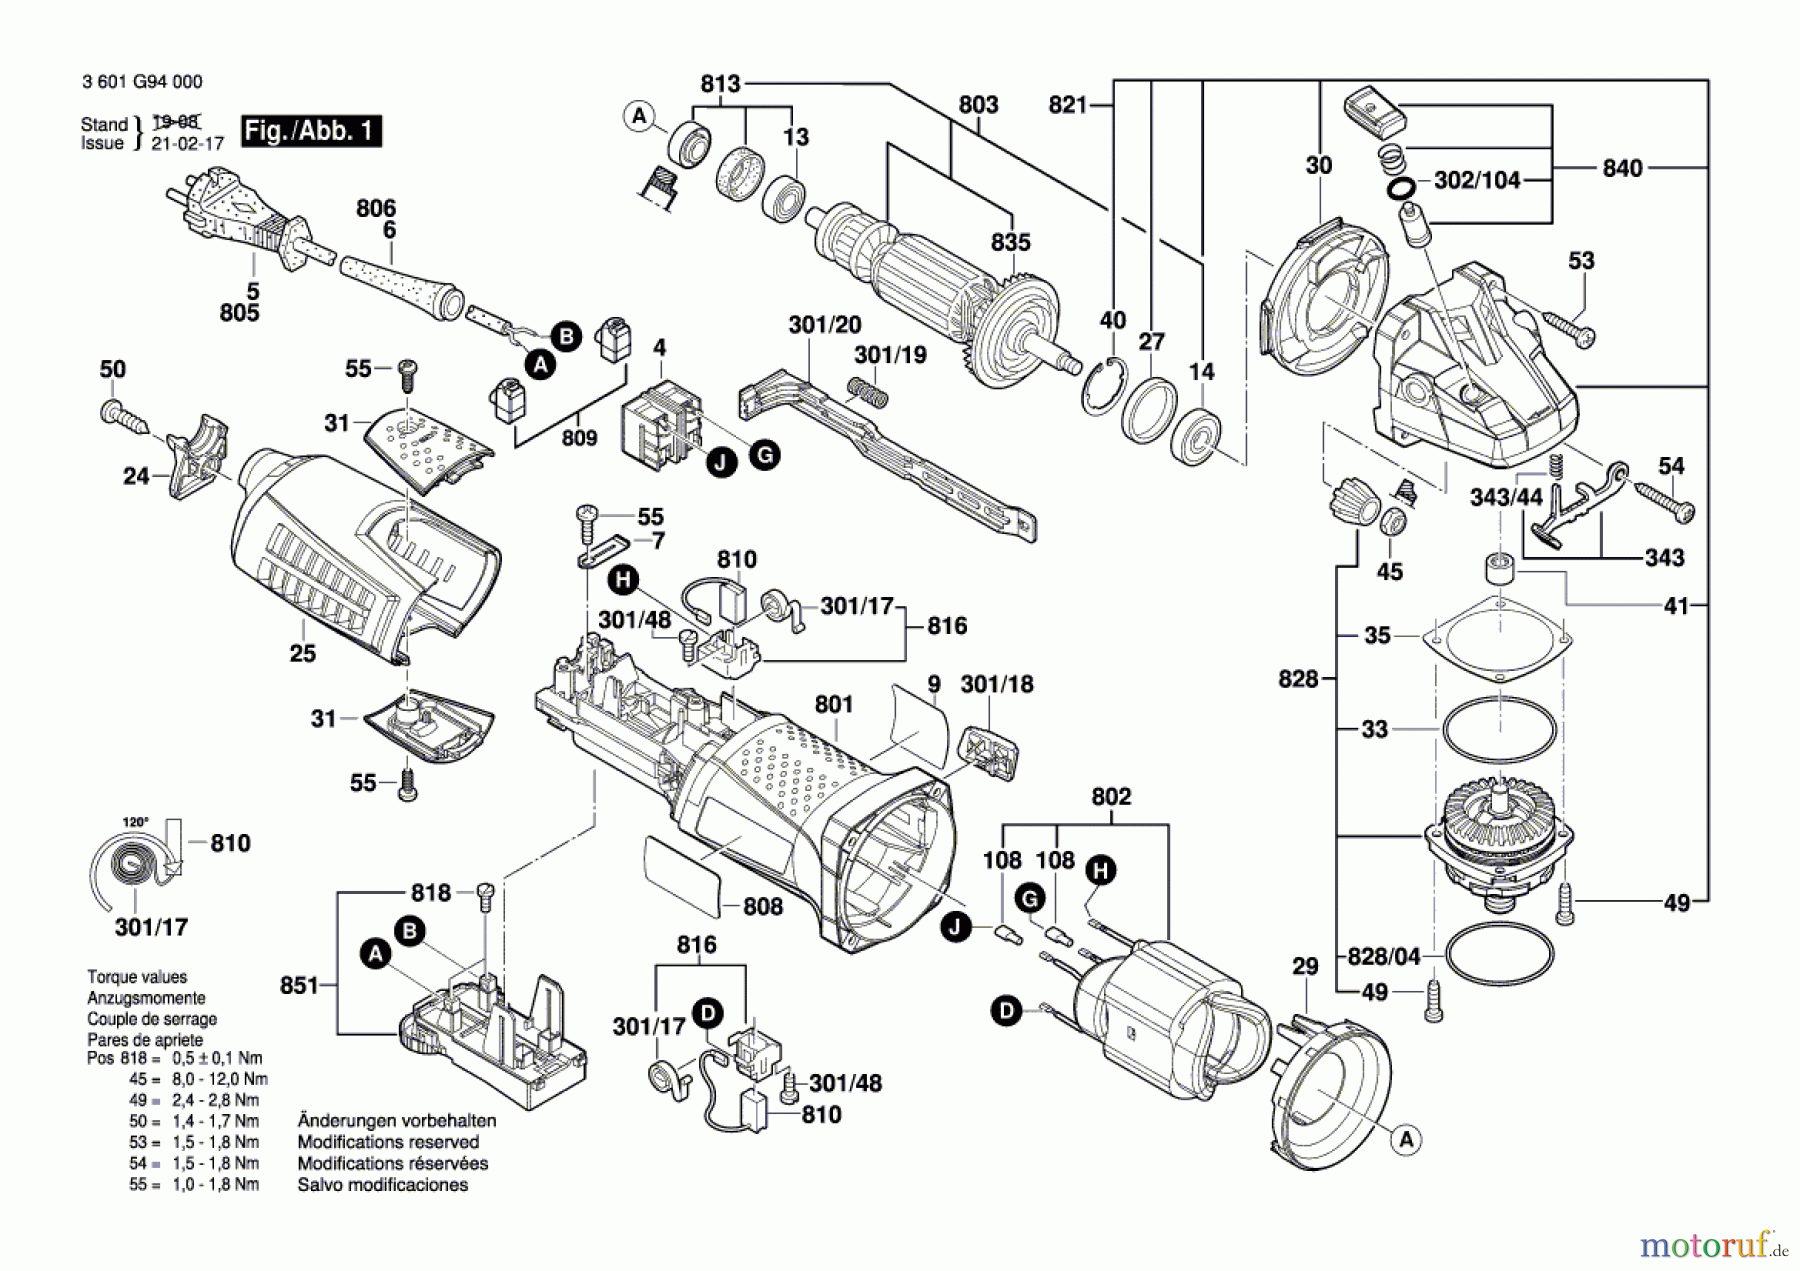  Bosch Werkzeug Winkelschleifer GWS 12-125 CIE Seite 1